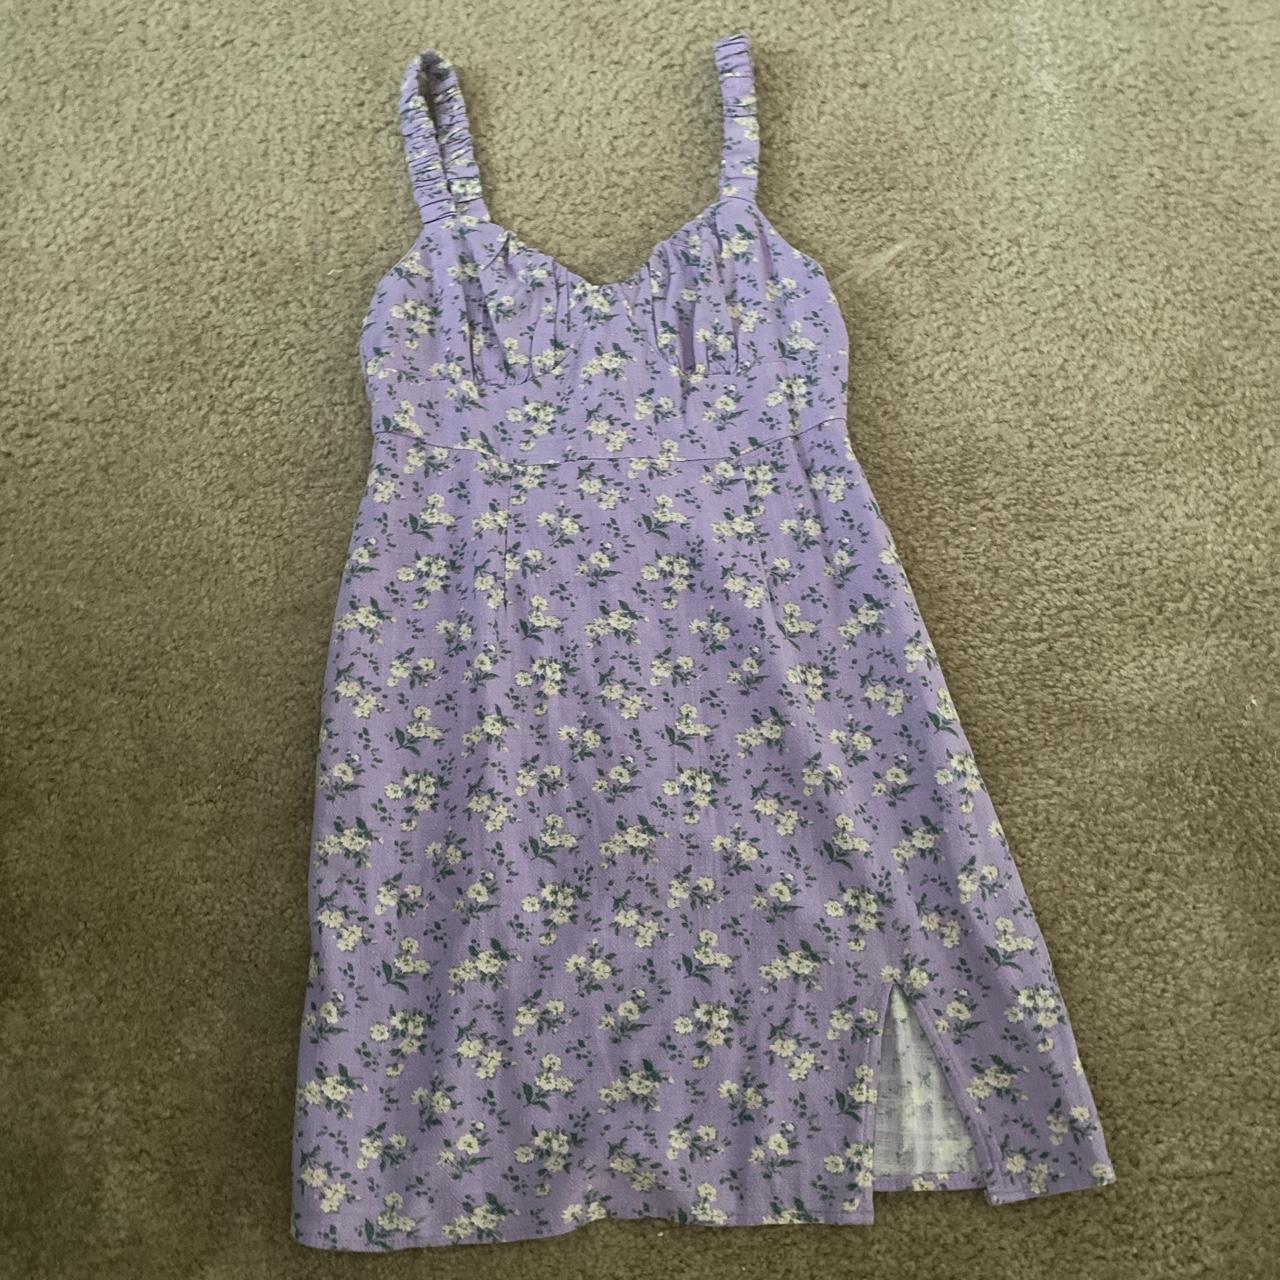 purple floral mini dress super cute just too small... - Depop